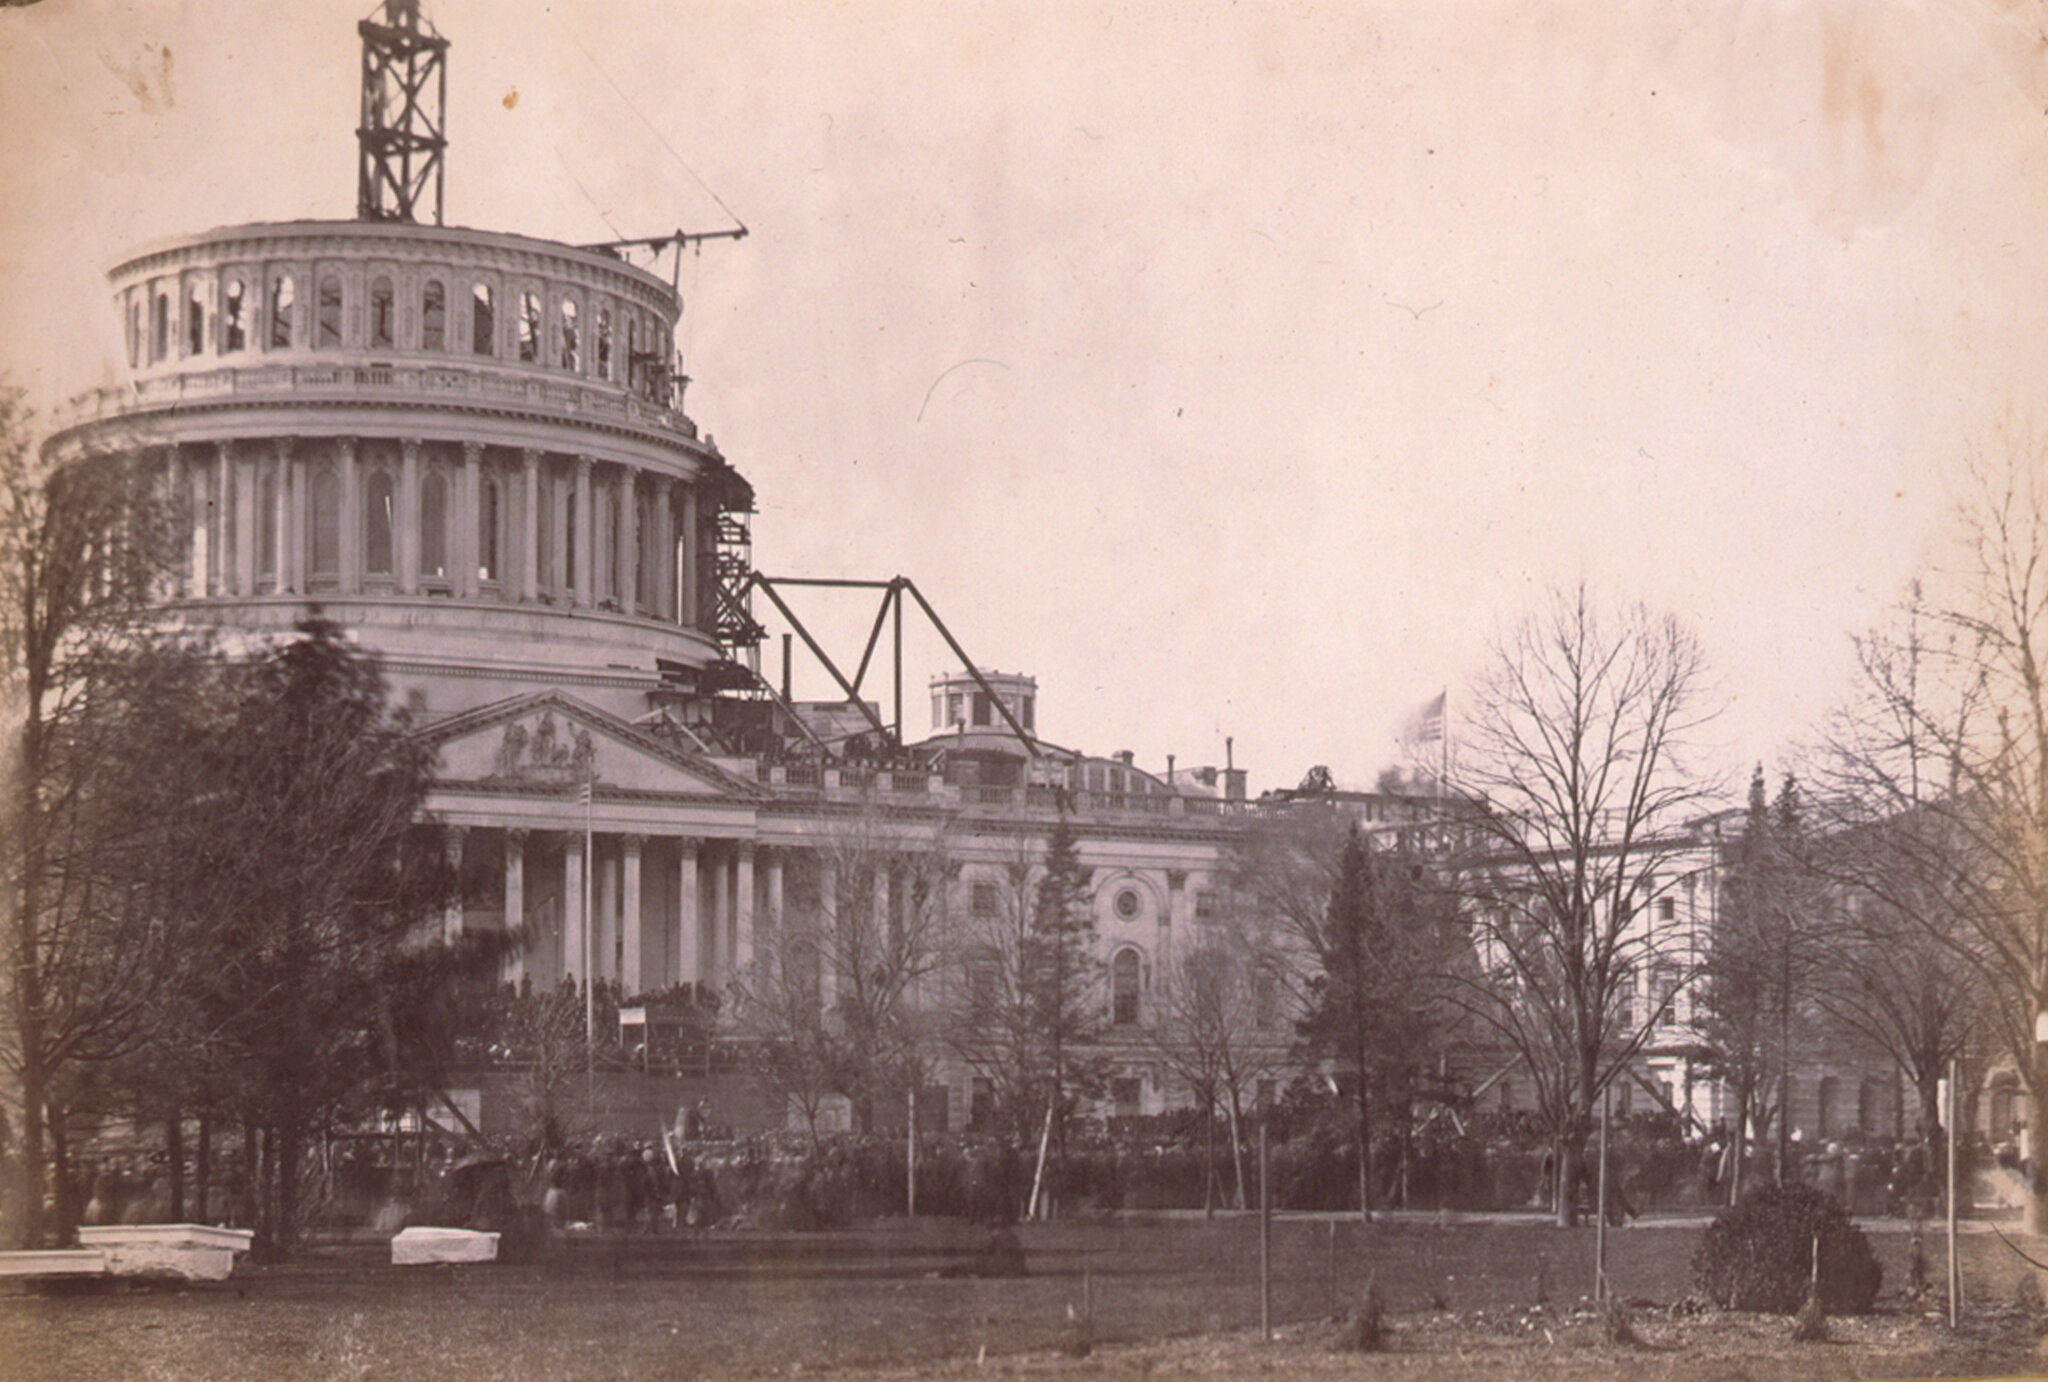 Incomplete U.S. Capitol Building, 1861 (public domain)